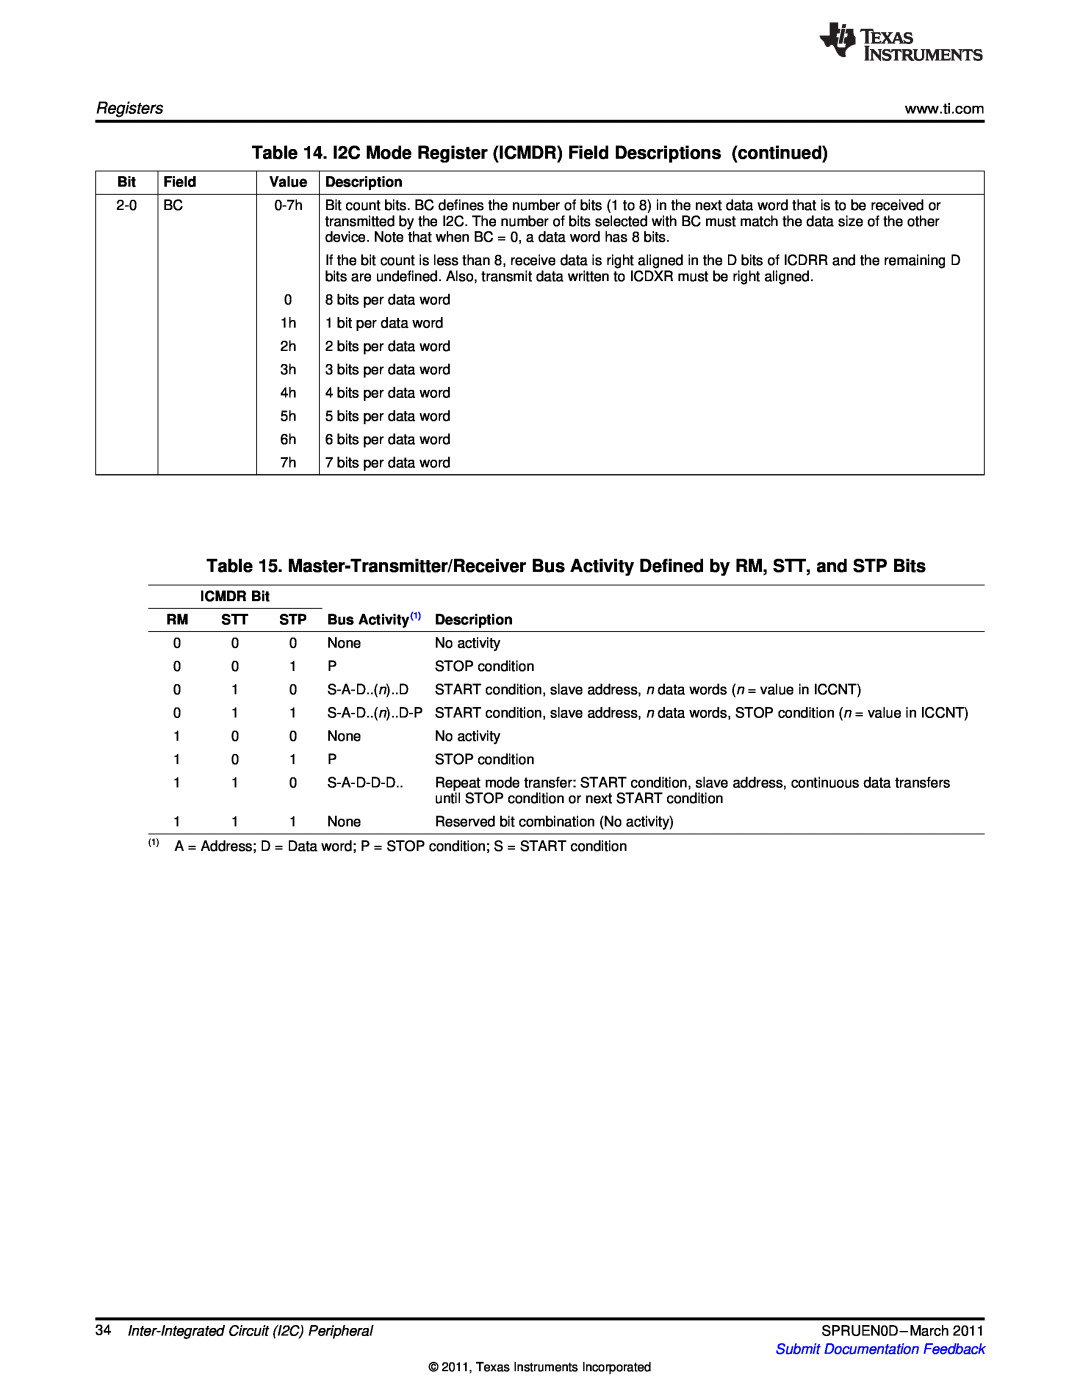 Texas Instruments TMS320C642X manual Field, Value, Description, ICMDR Bit, Bus Activity1 